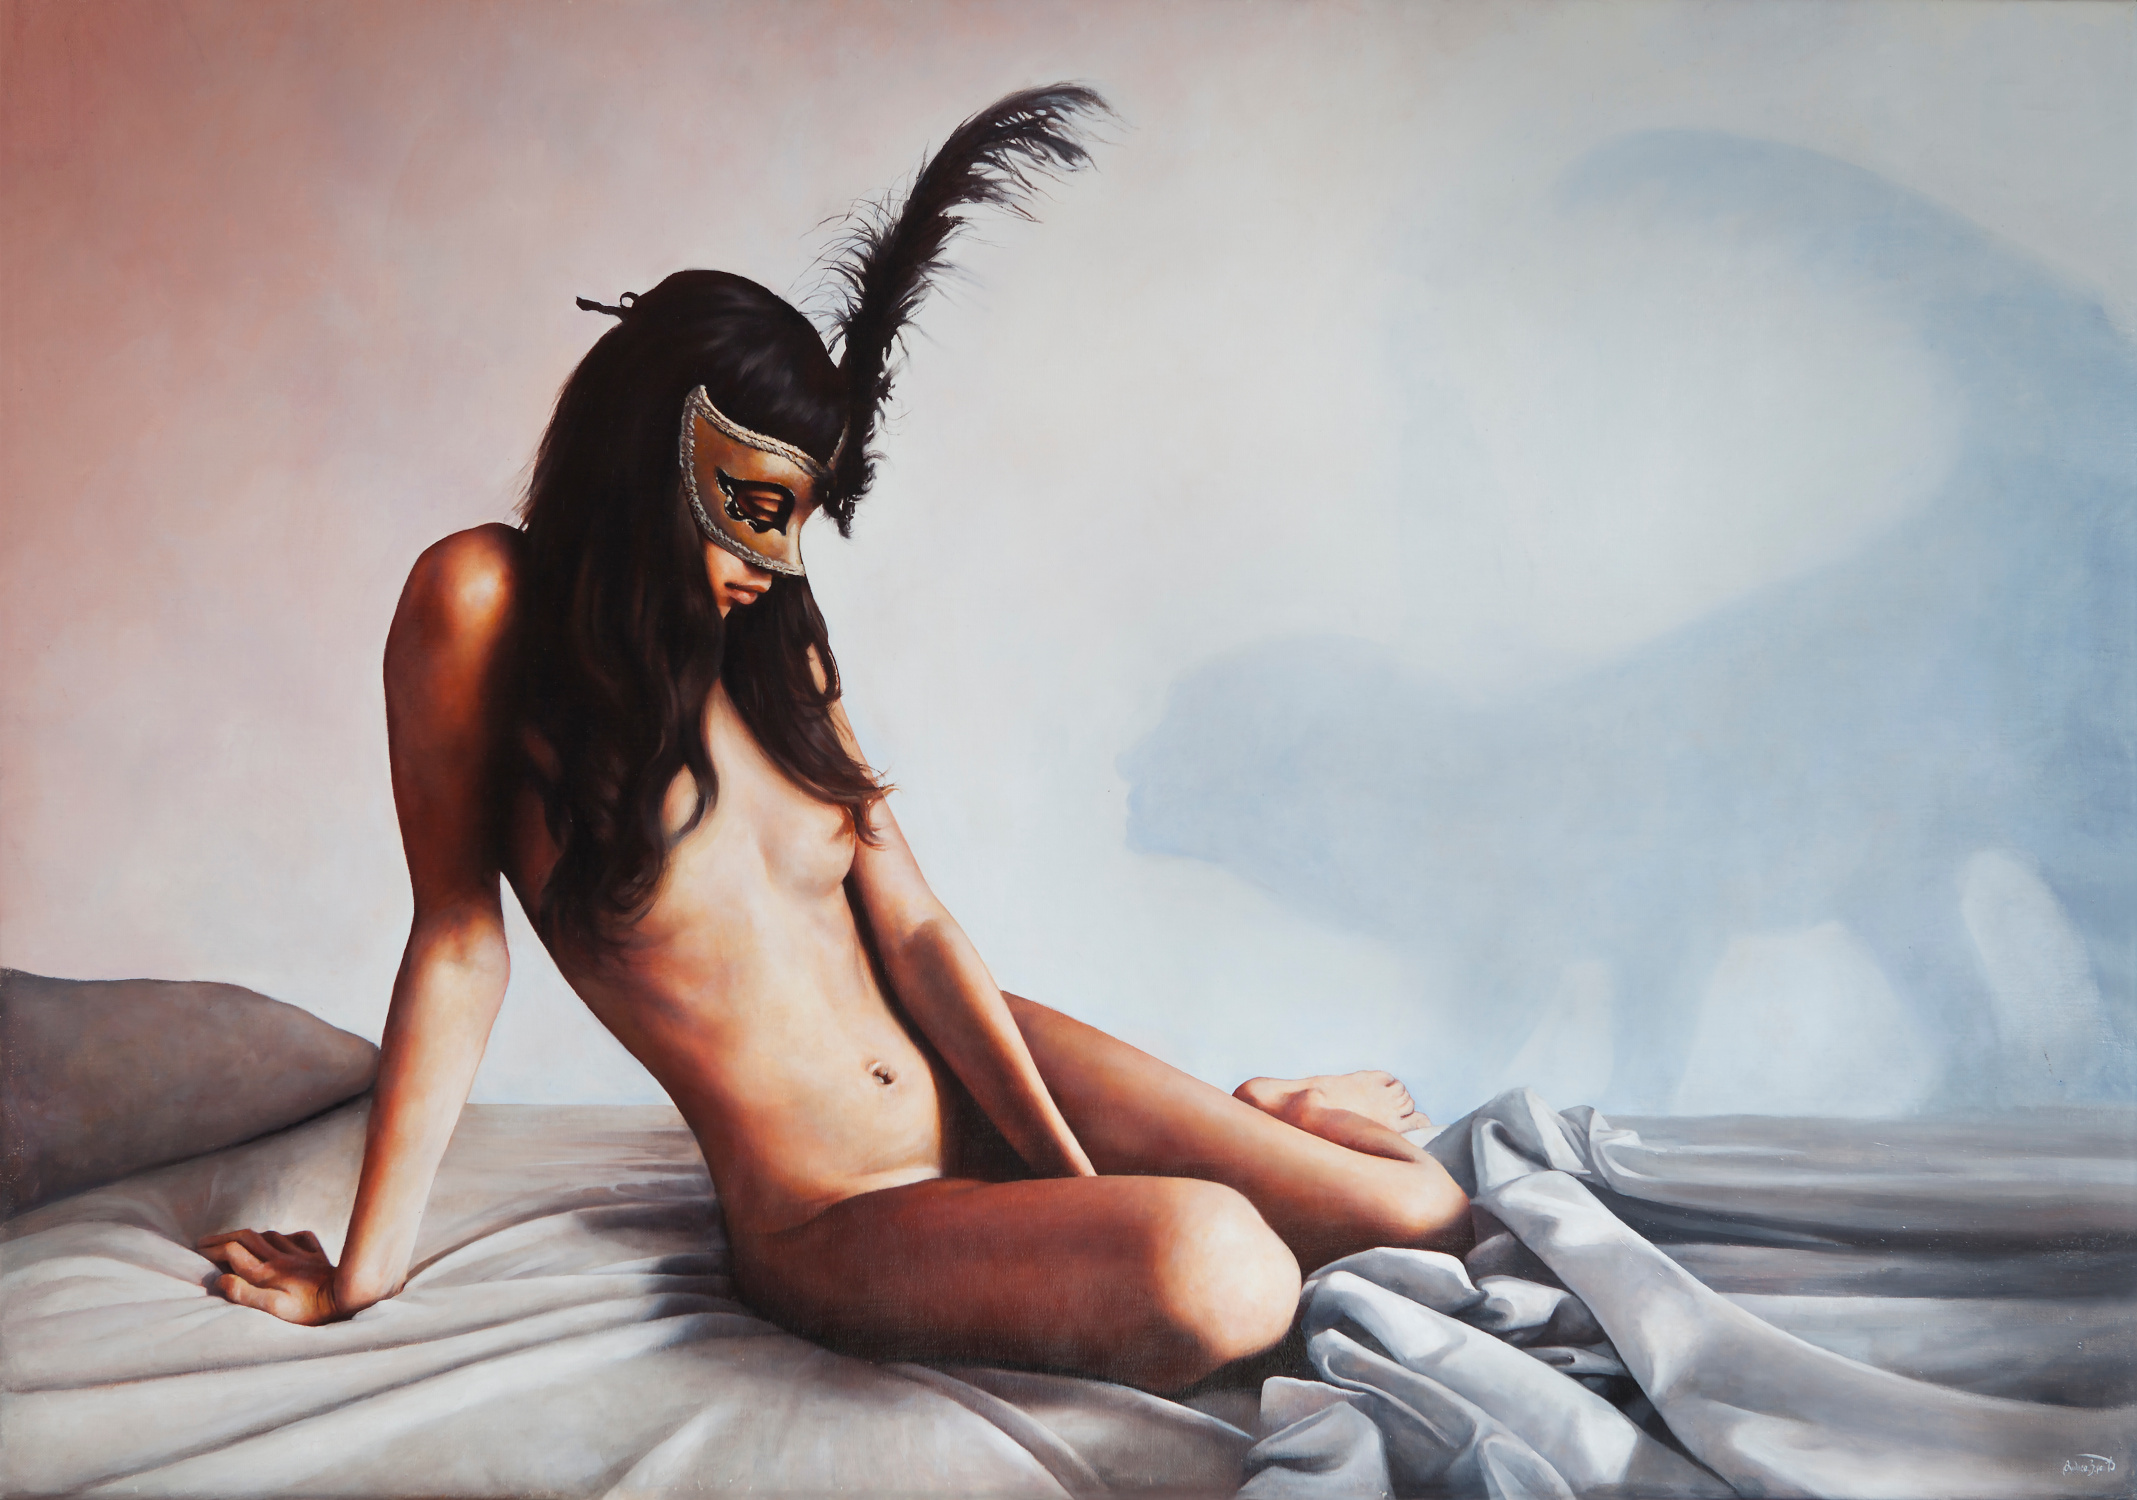 "Amami, olio su tela", 70x100cm, 2015